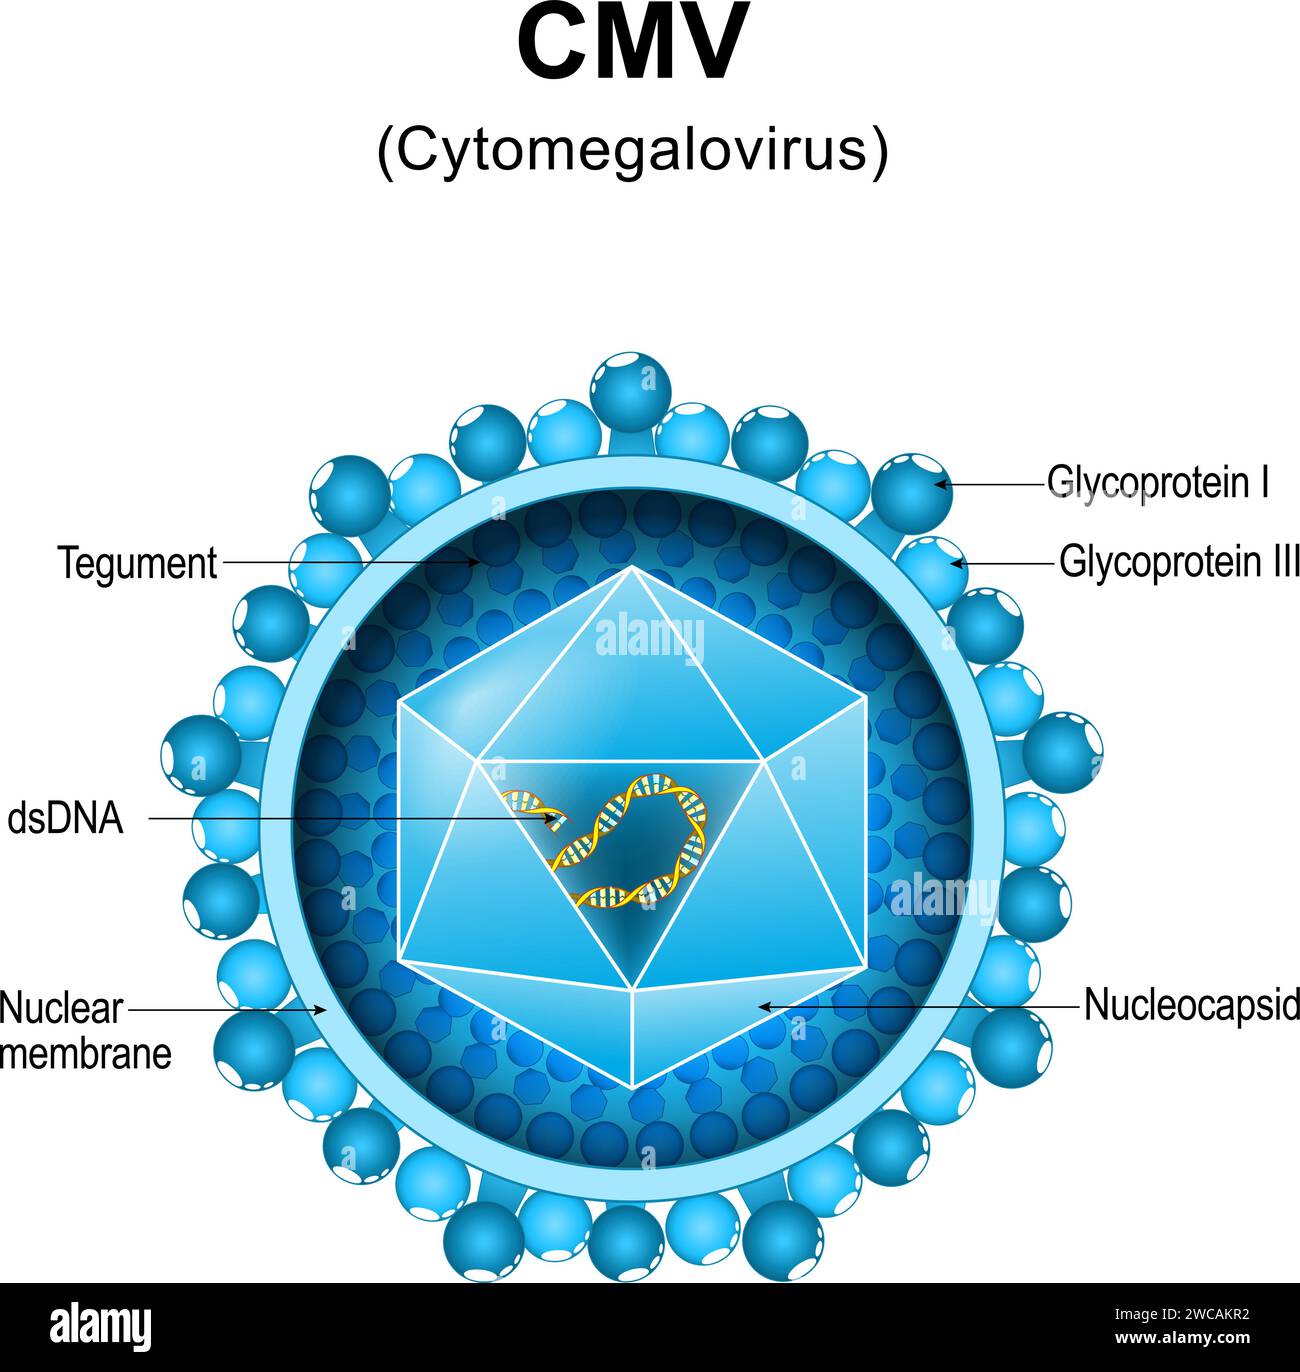 Human cytomegalovirus Banque d'images détourées - Alamy